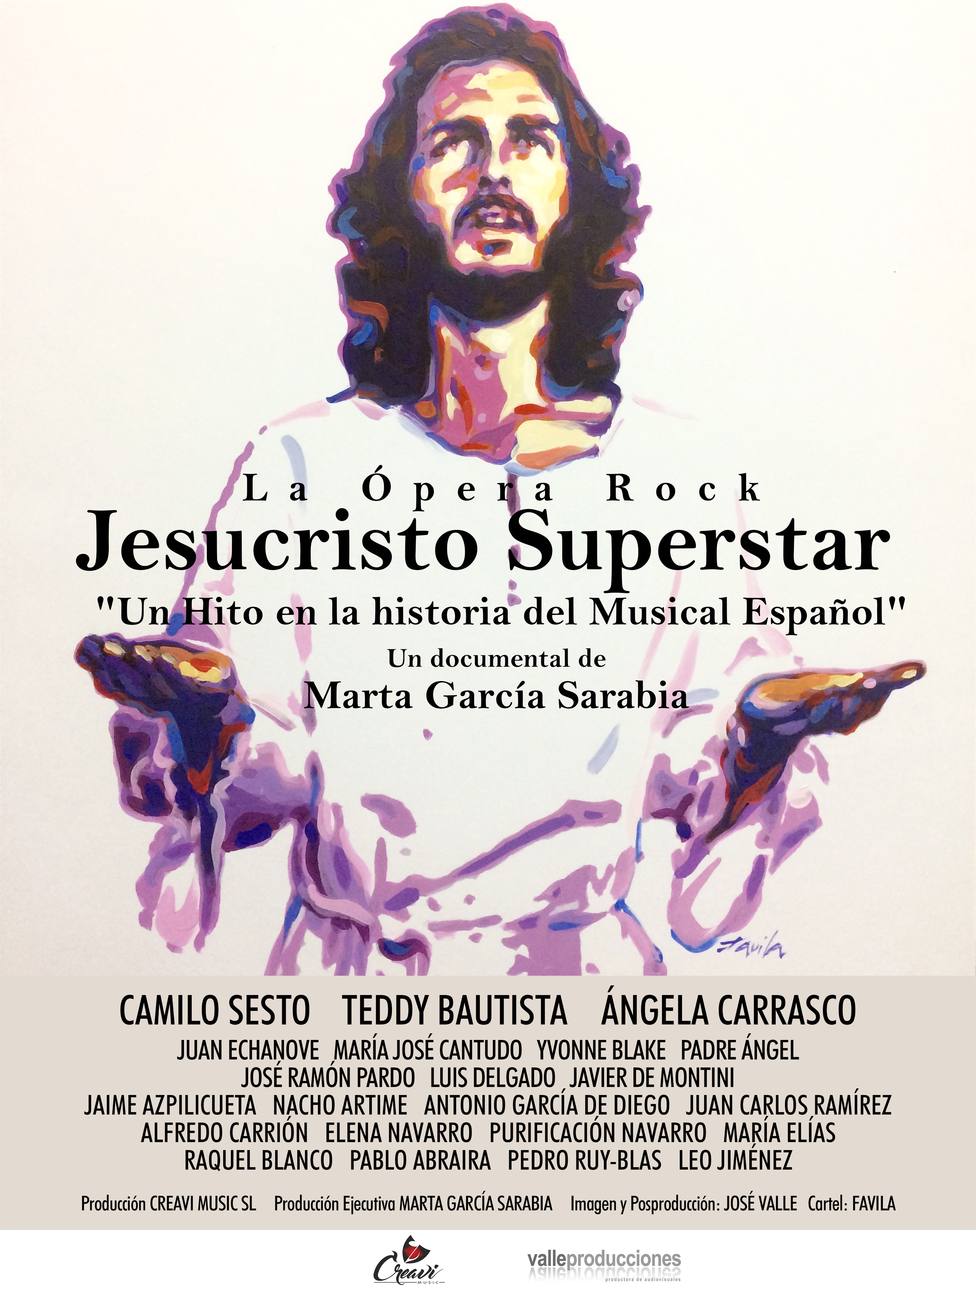 Cines de 5 provincias recordarán a Camilo Sesto con el reestreno del documental sobre el musical Jesucristo Superstar